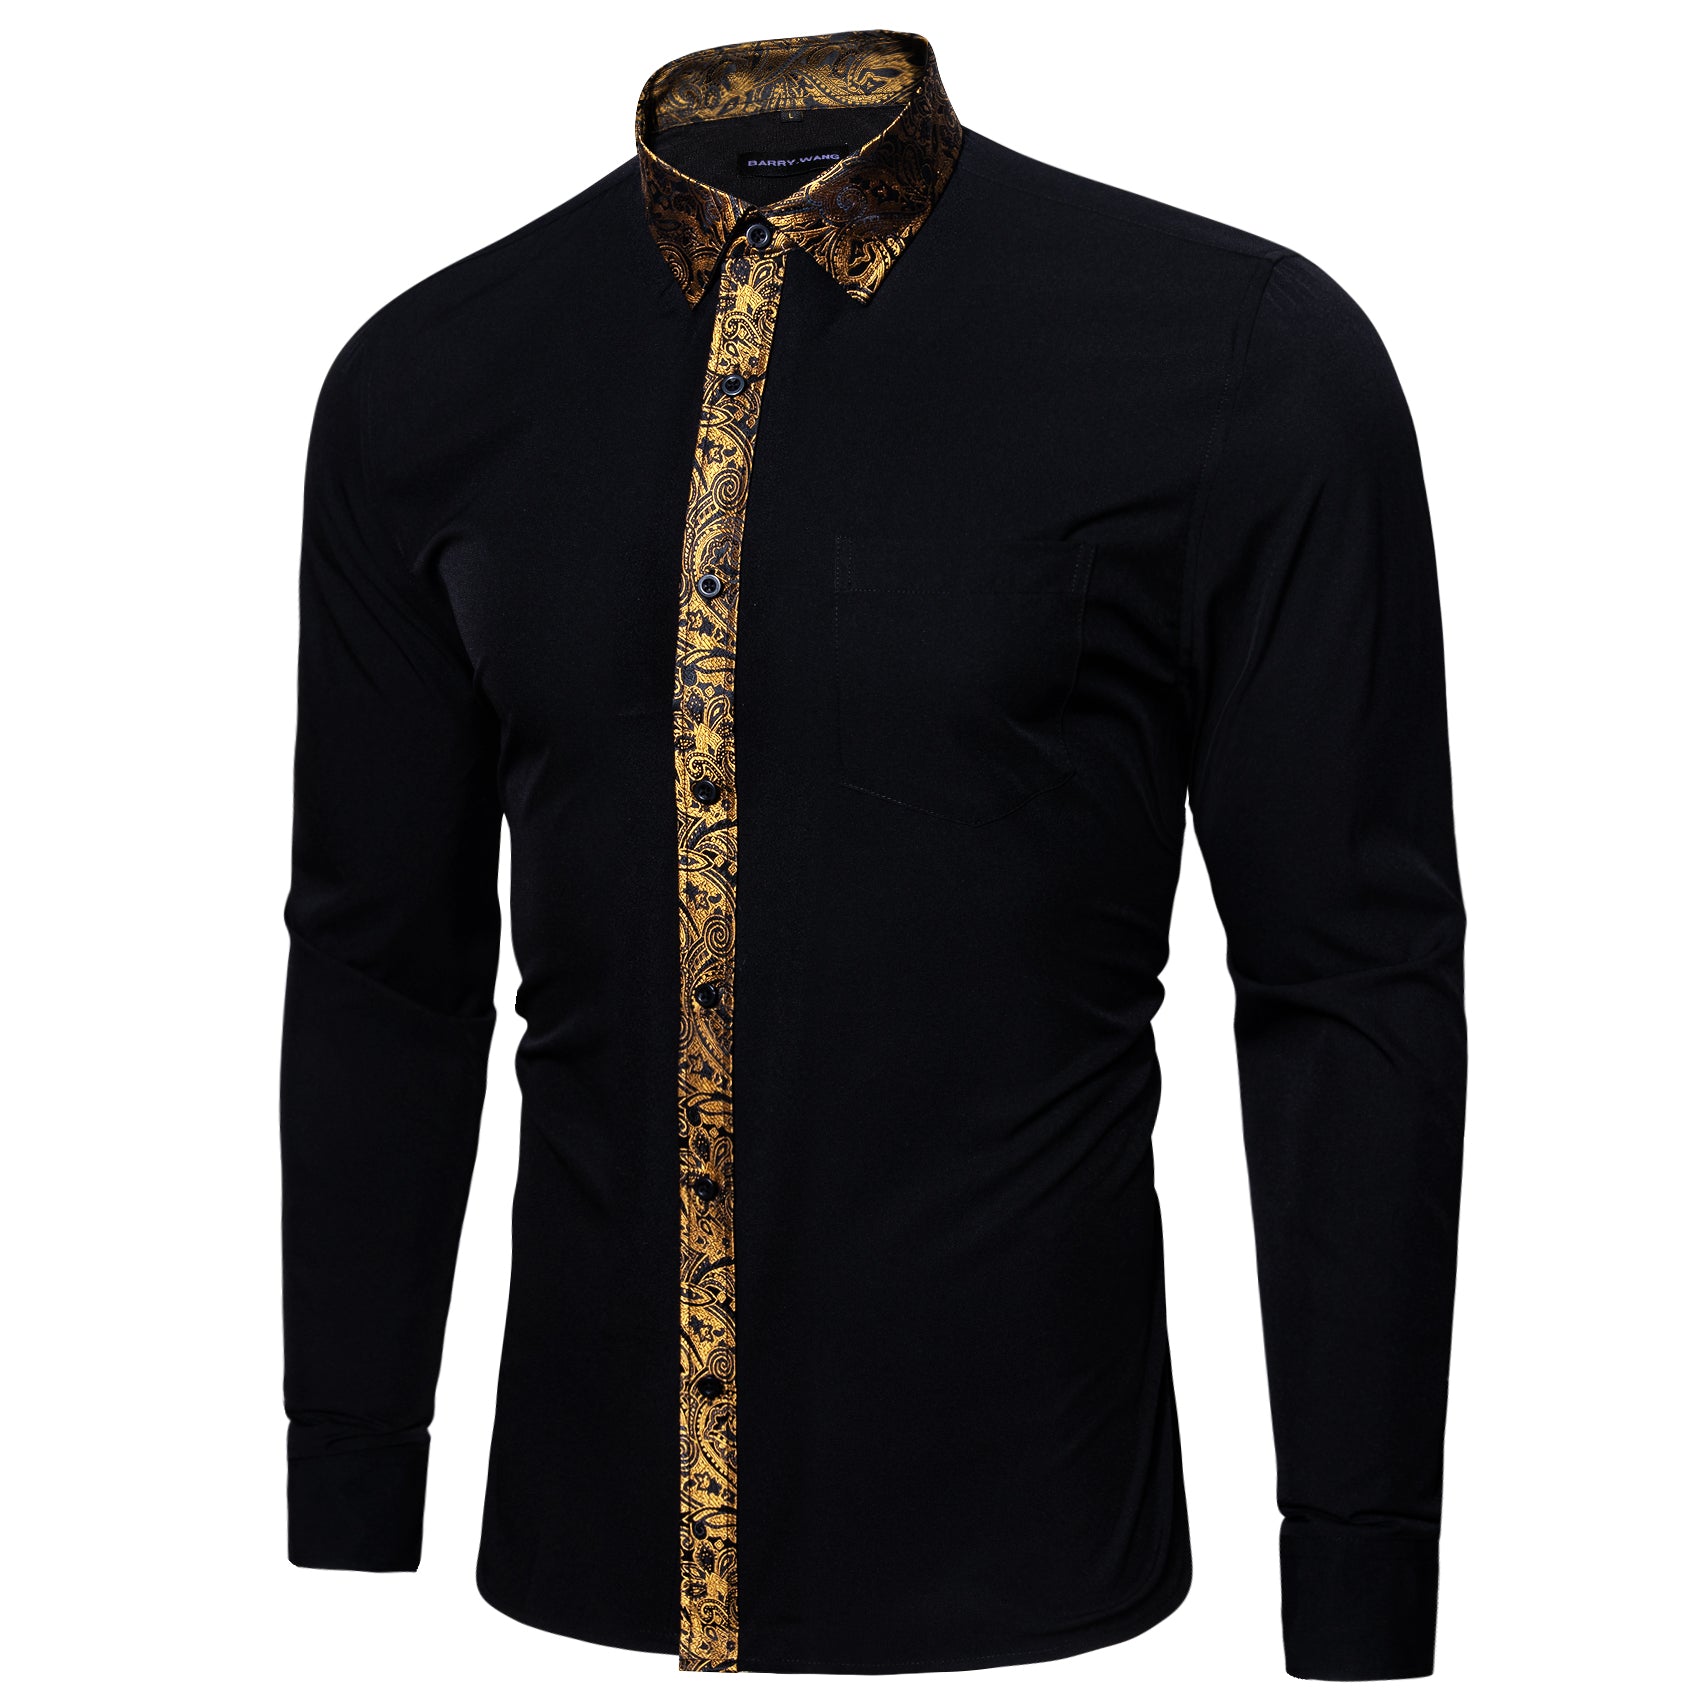 Barry.wang Button Down Shirt Black Golden Splicing Men's Business Shirt